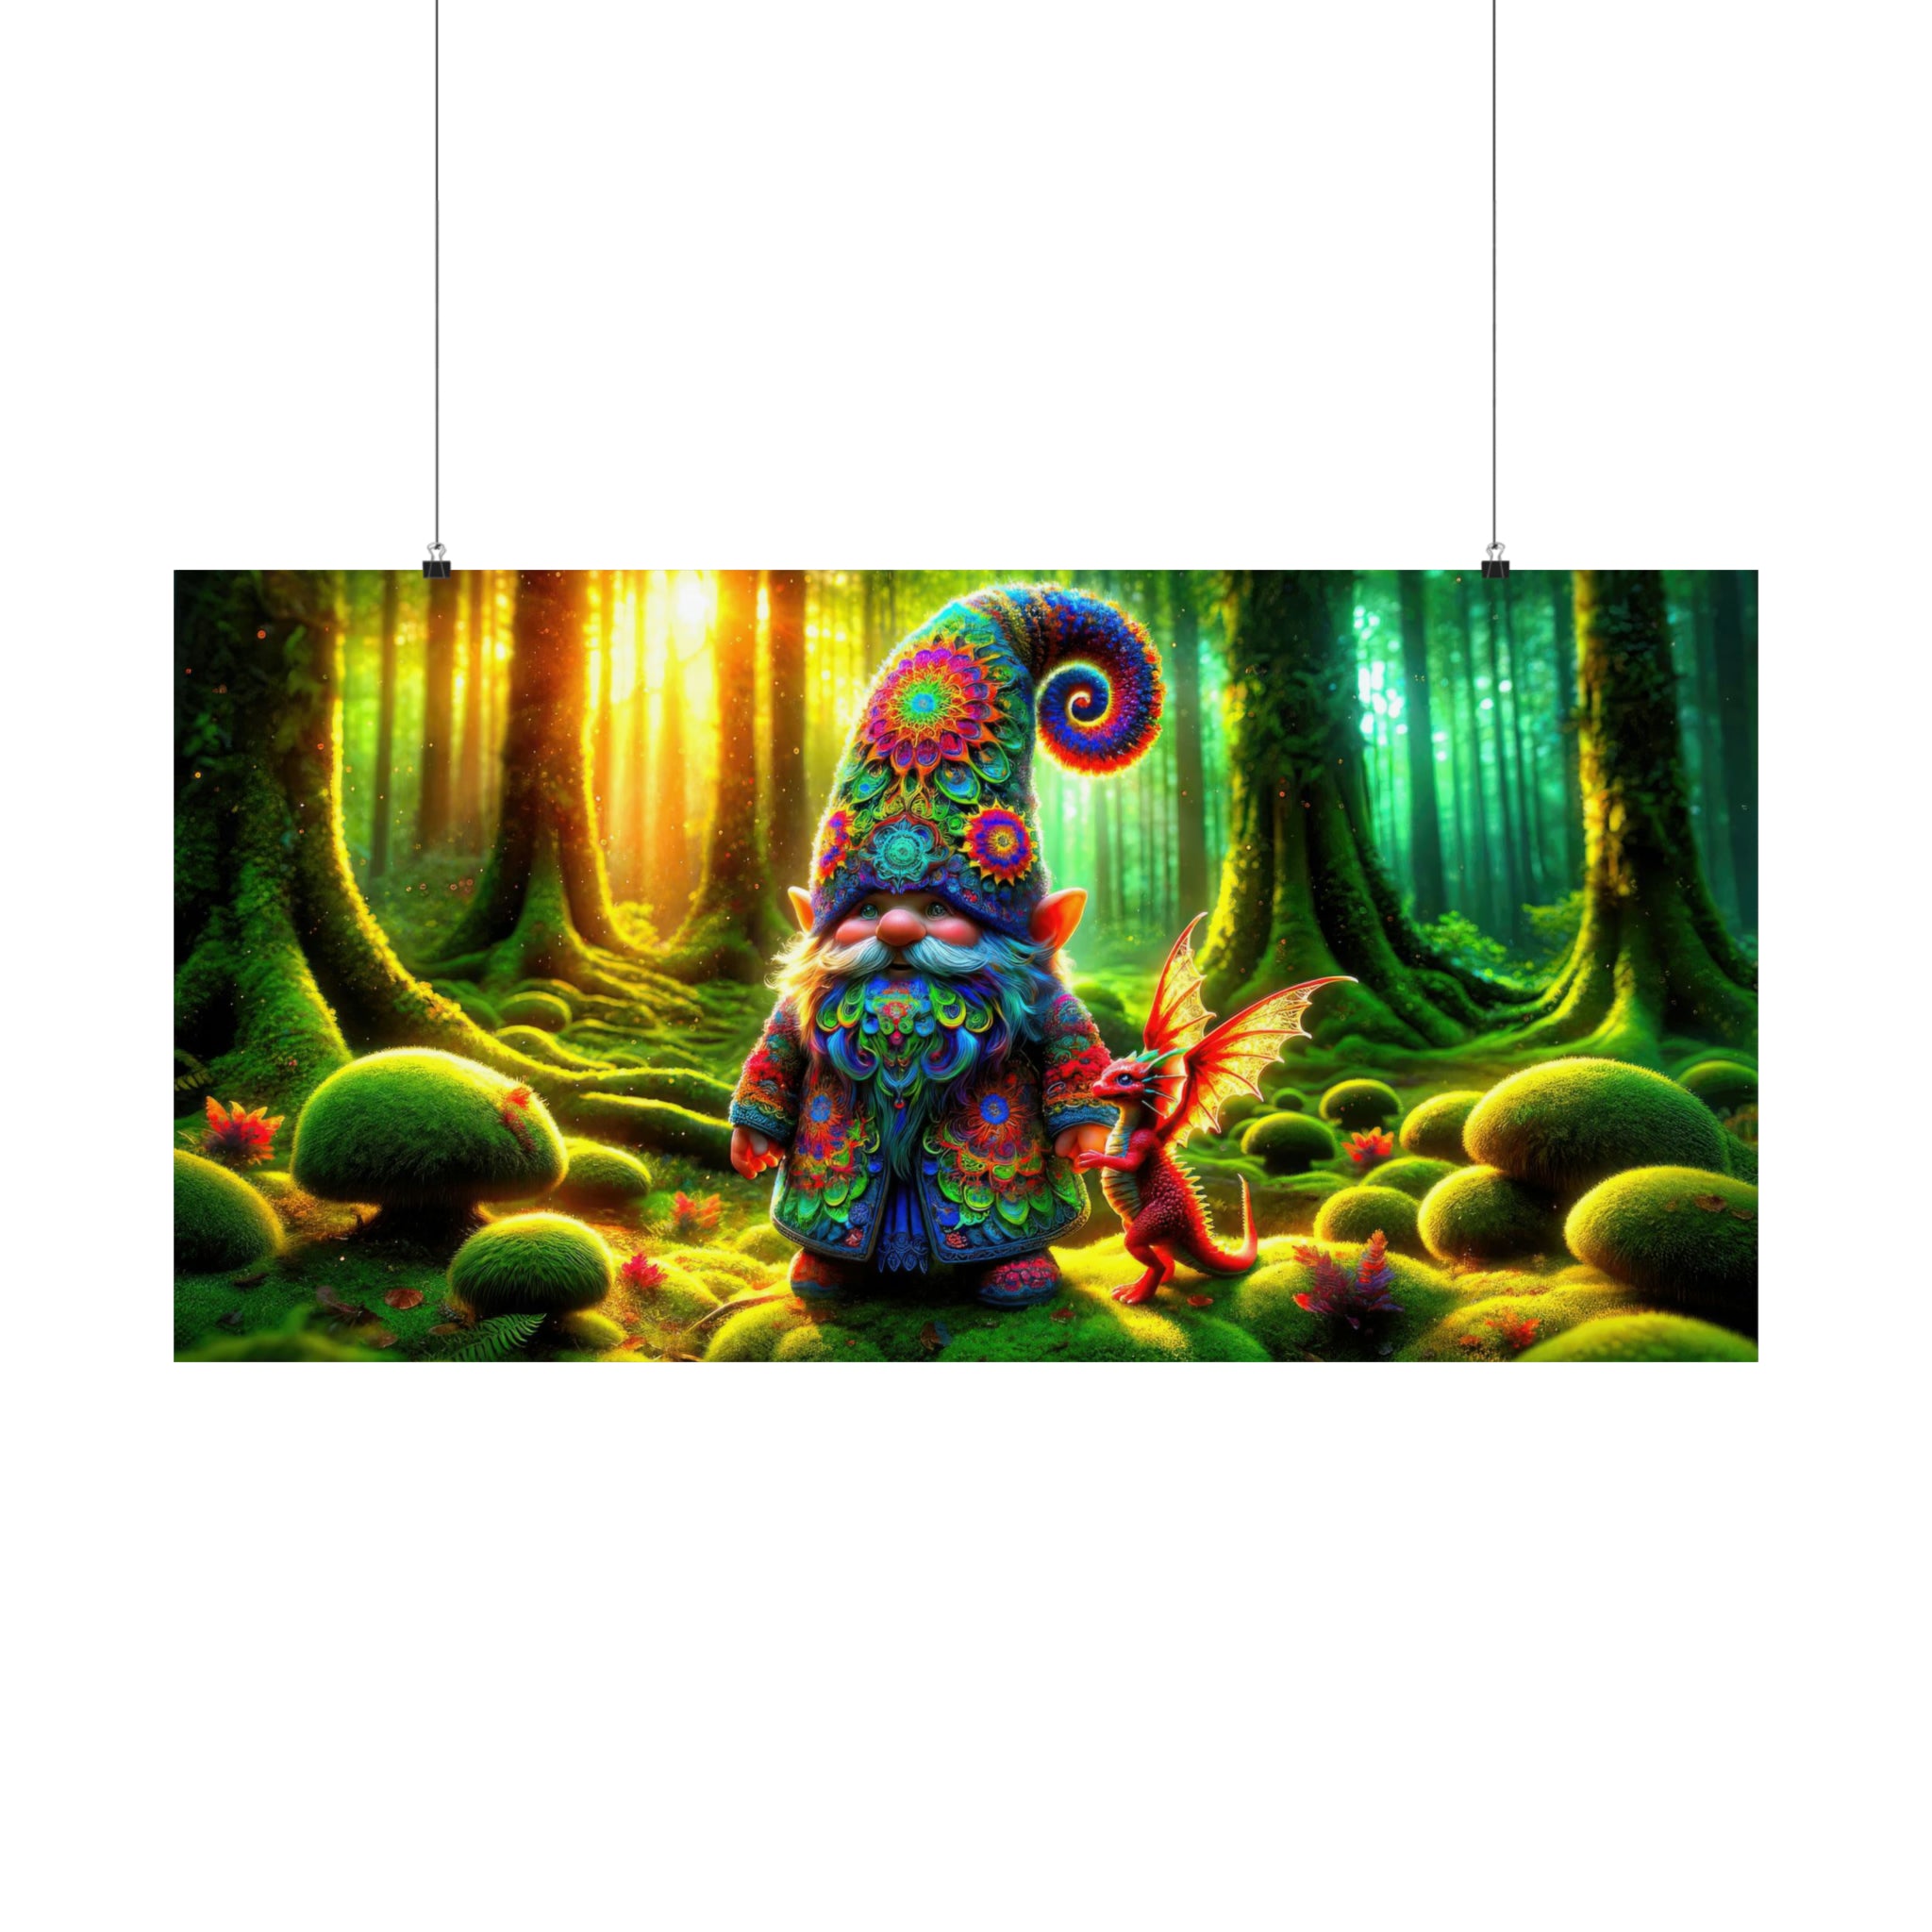 Le matin du Gnome dans les bois enchantés Poster